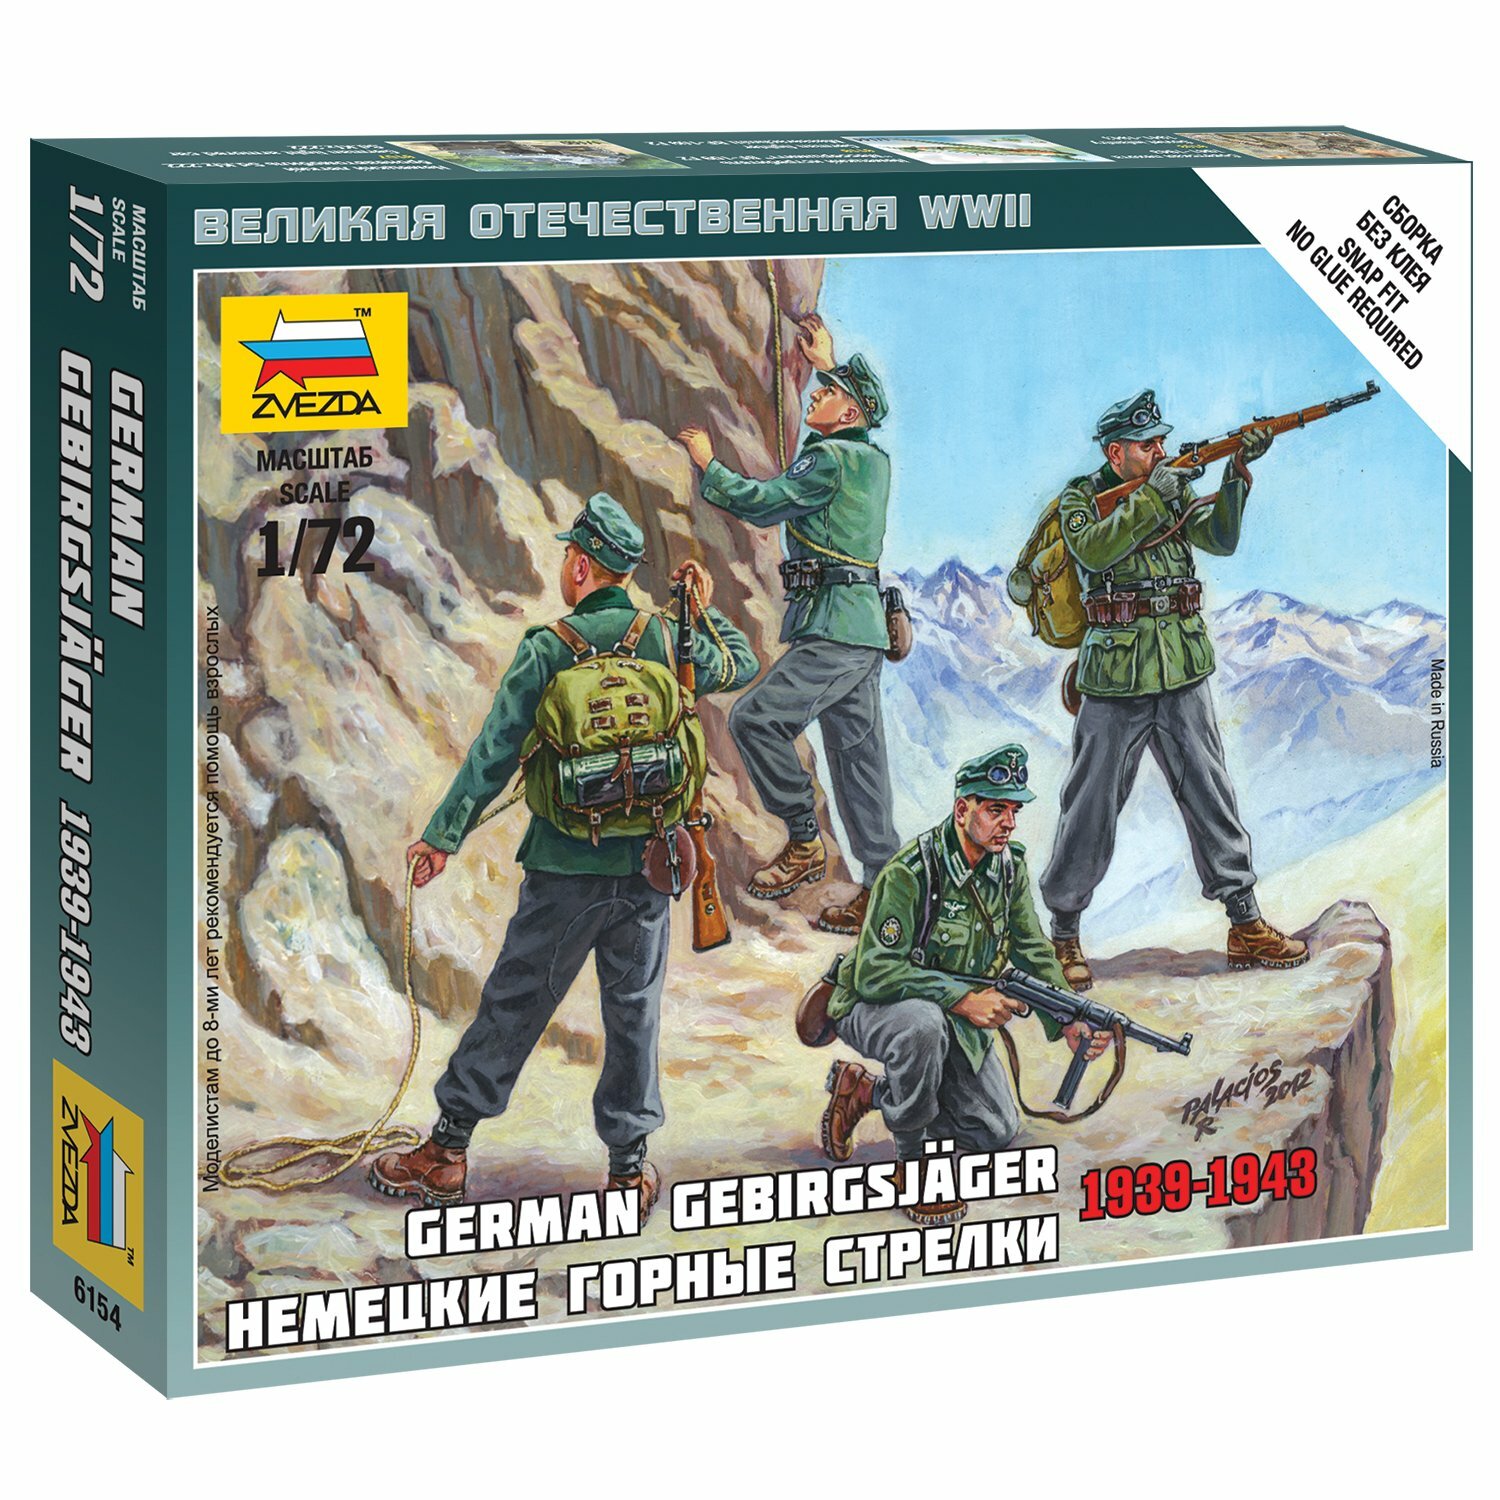 Сборная модель "Немецкие горные стрелки 1939-1943"